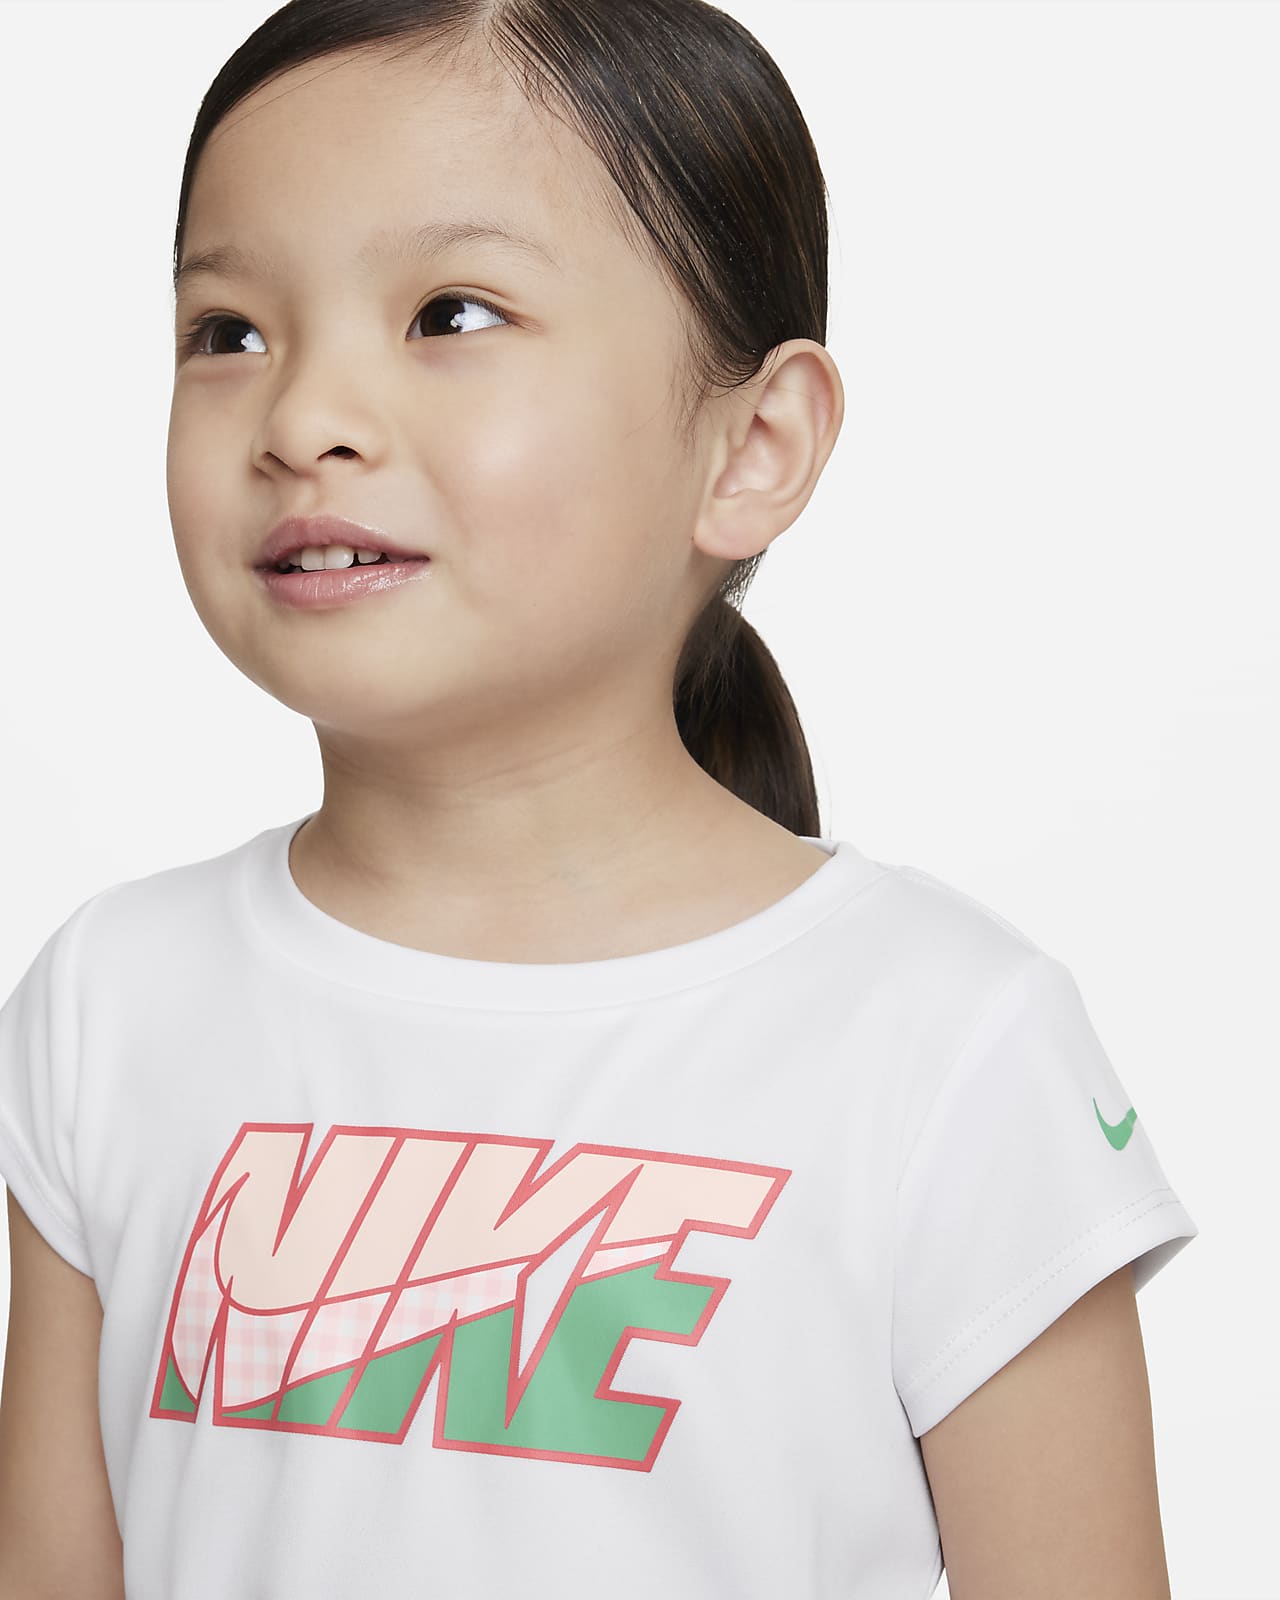 Ceder Disparates Especial Conjunto de 2 piezas Dri-FIT para niños pequeños (conjunto Nike Pic-Nike  Sprinter). Nike.com